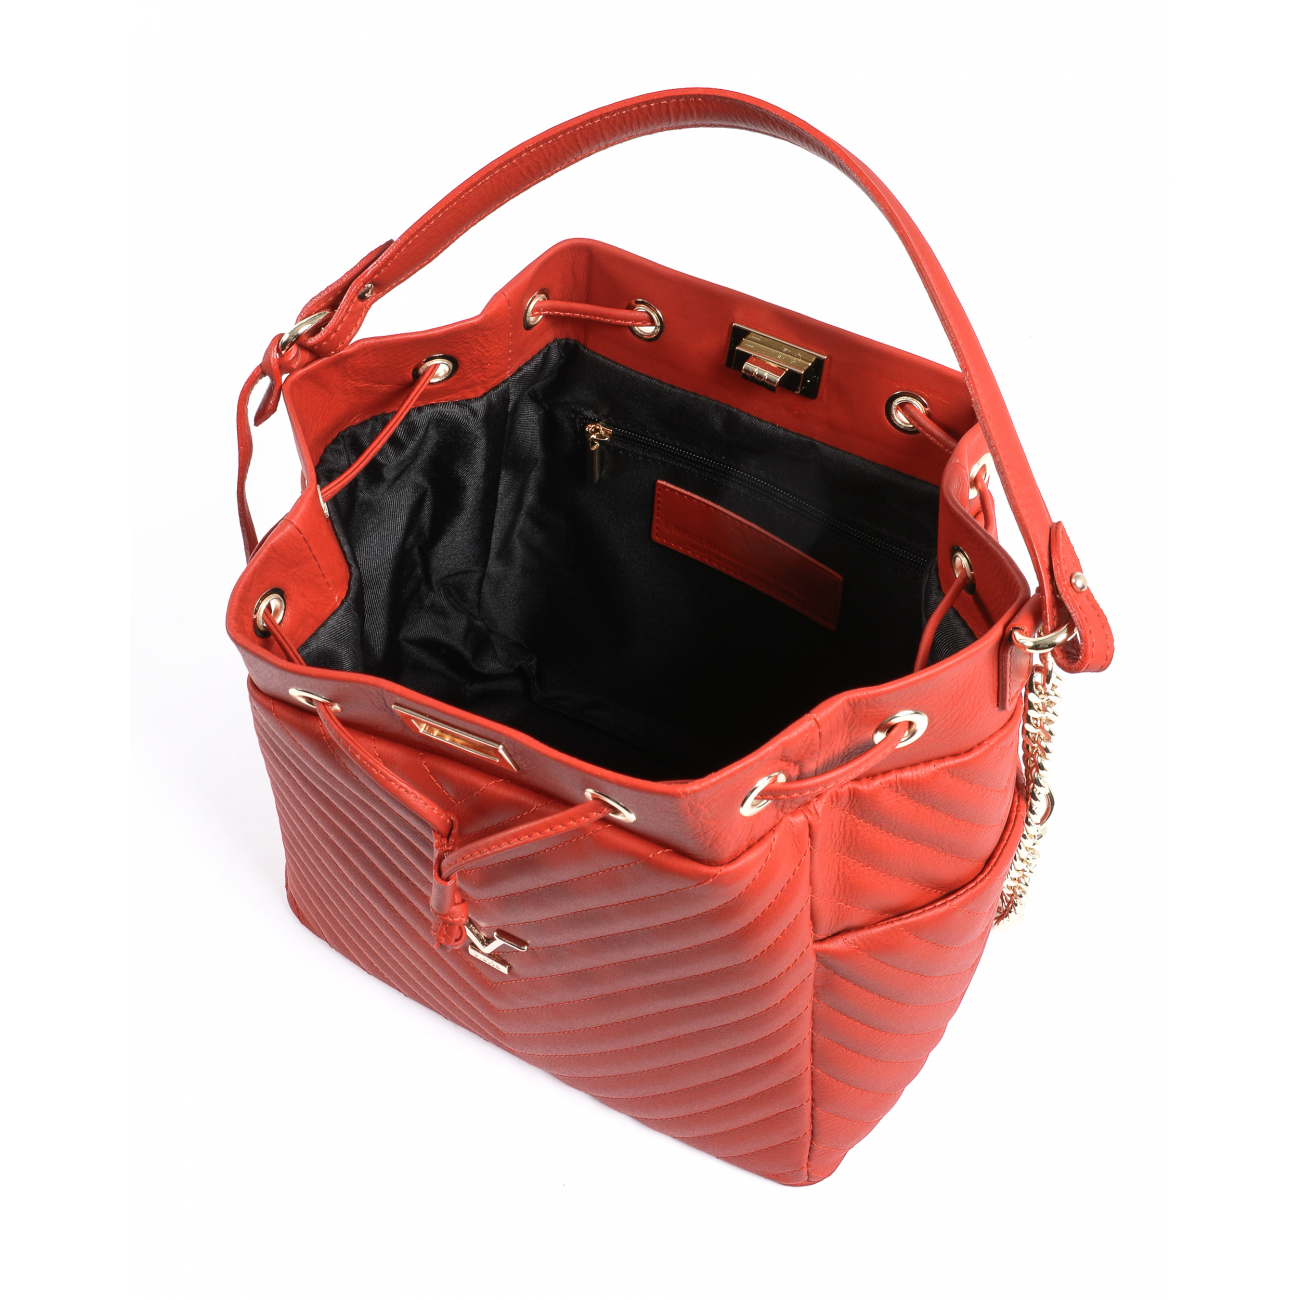 19V69 Italia Womens Handbag Red BH10272 52 SAUVAGE ROSSO FUOCO